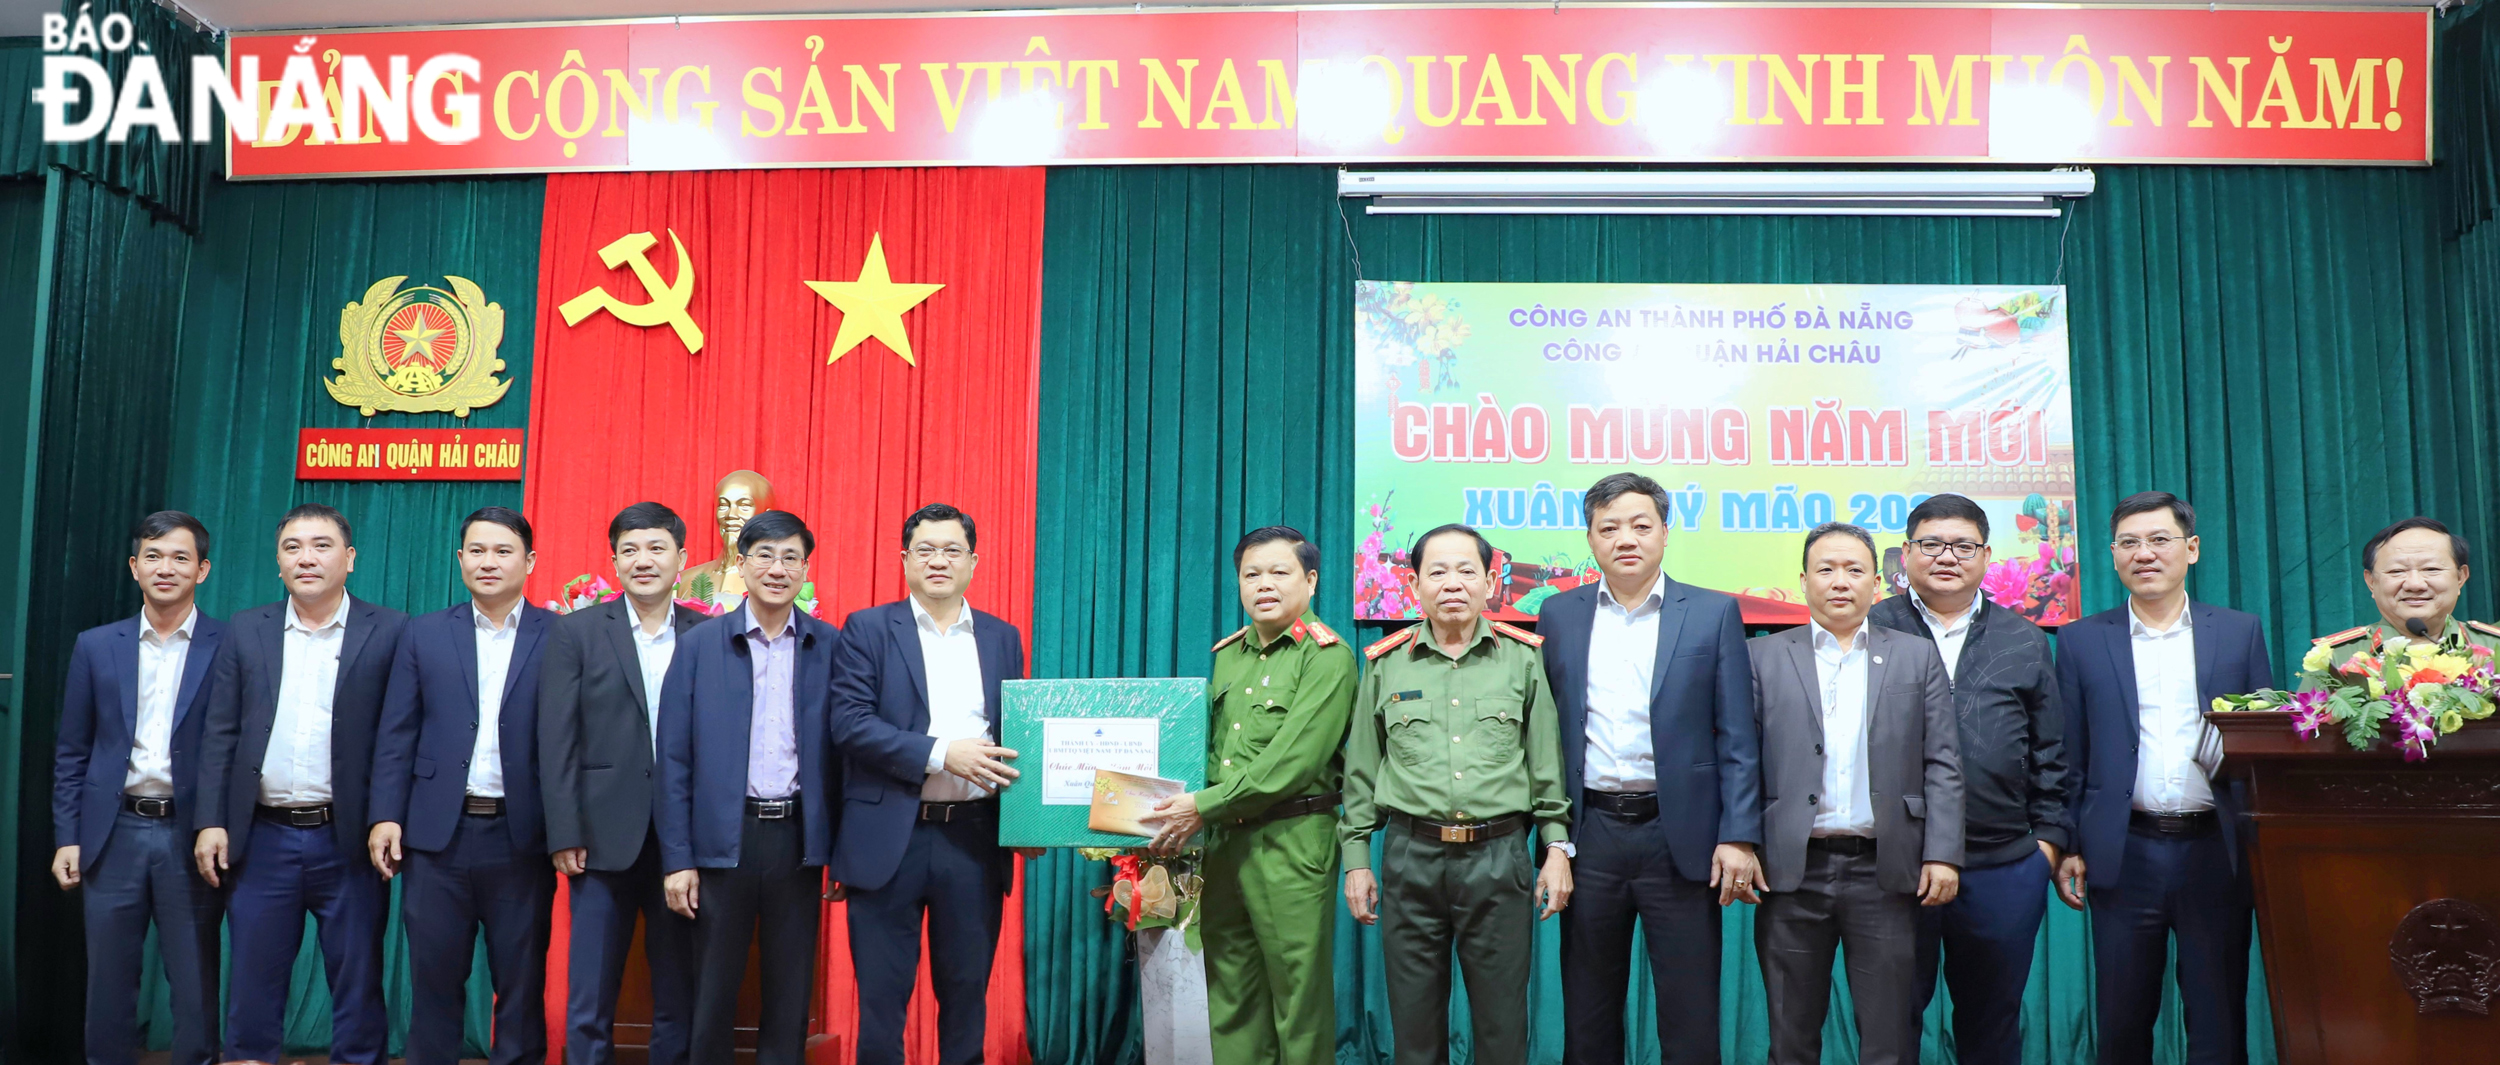 Phó Chủ tịch HĐND thành phố Trần Phước Sơn tặng quà chúc Tết cán bộ, chiến sĩ Công an quận Hải Châu. Ảnh: NGỌC PHÚ